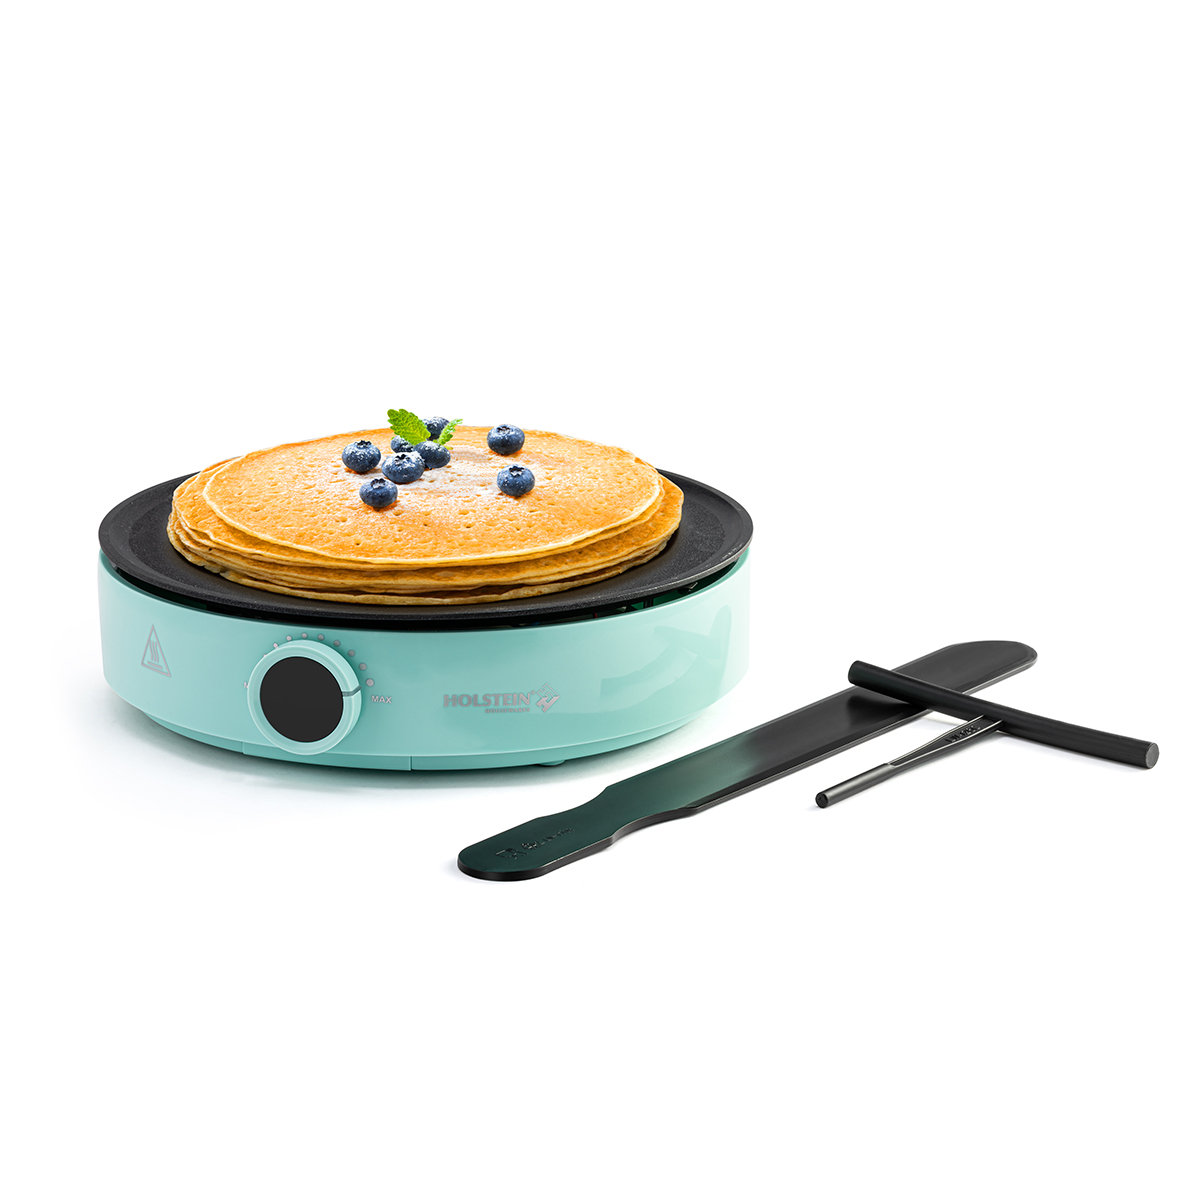 Crepe Maker Machine Pancake Griddle - Nonstick 12 Electric Maker Batter